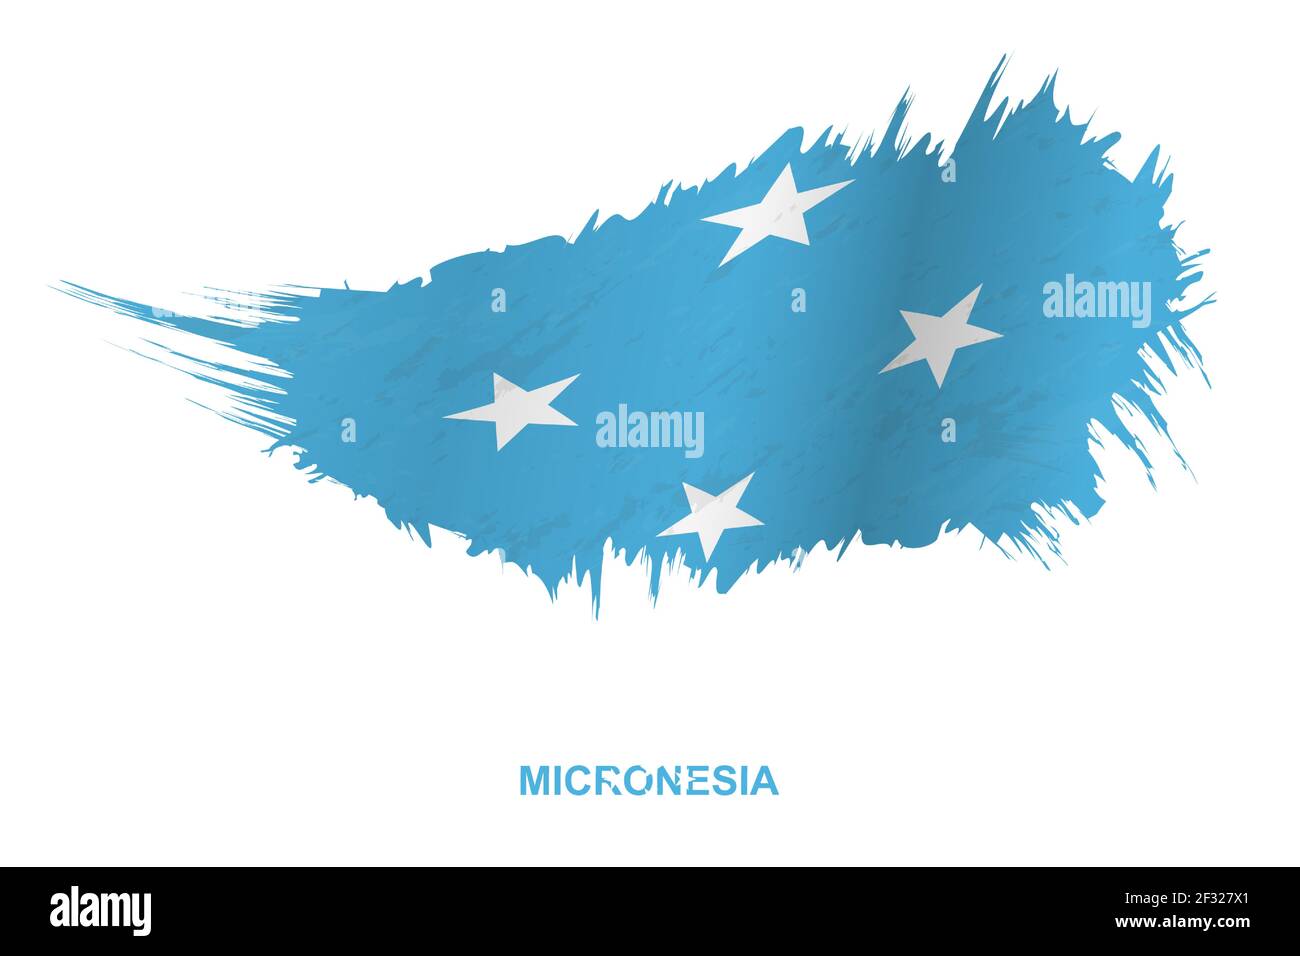 Flagge von Mikronesien im Grunge-Stil mit Windeffekt, Vektor Grunge Pinselstrich Flagge. Stock Vektor